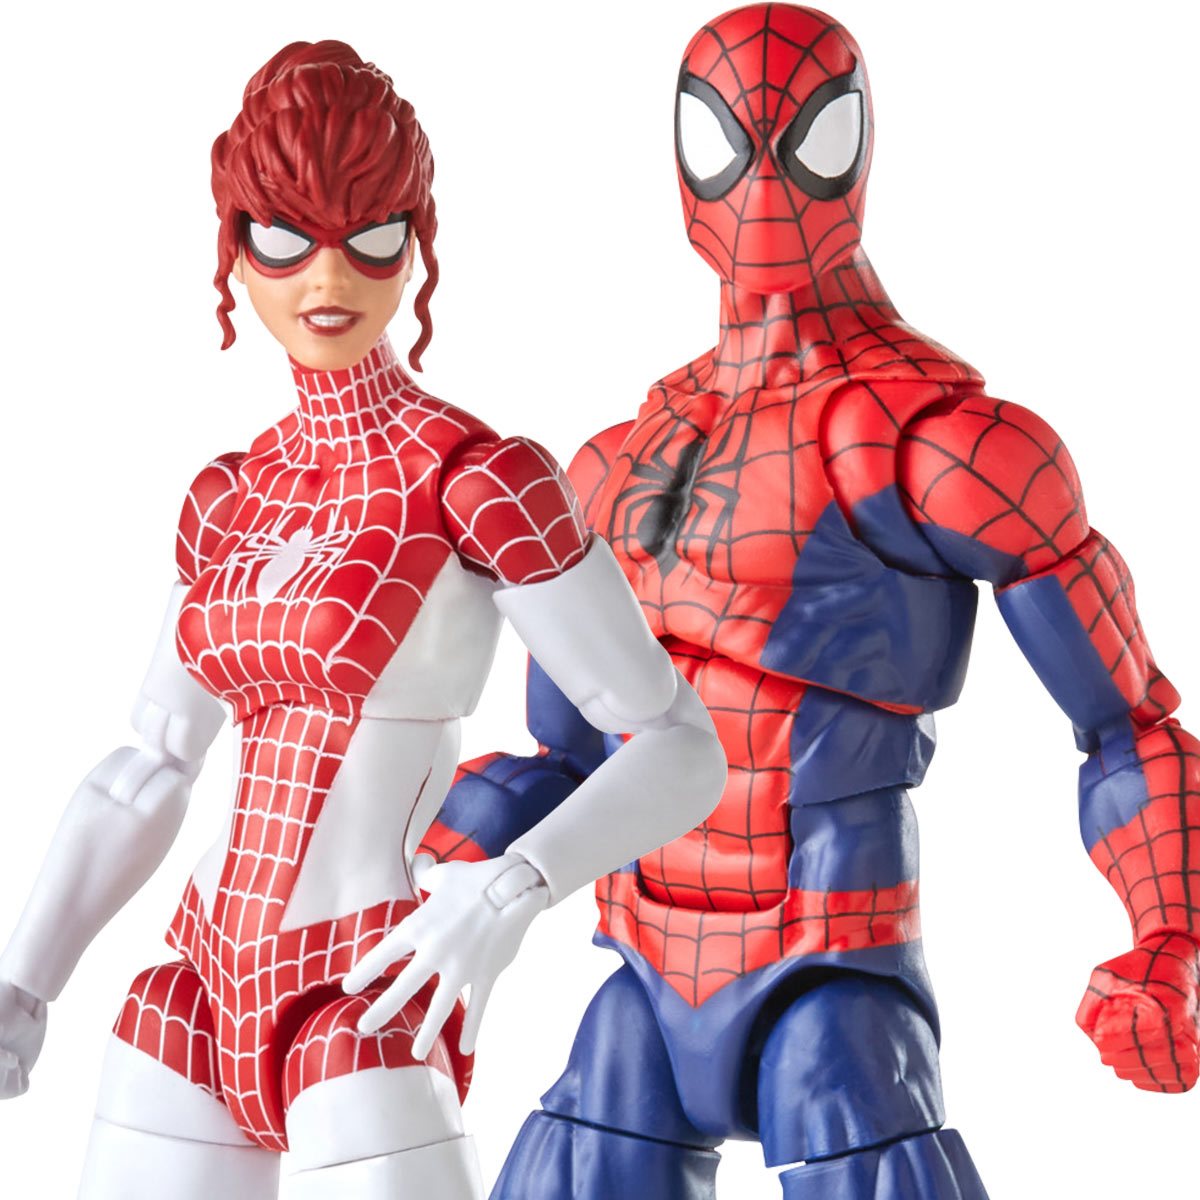 Spider-Man Marvel Legends Spider-Man and Spinneret 6-inch Action Figure 2- Pack